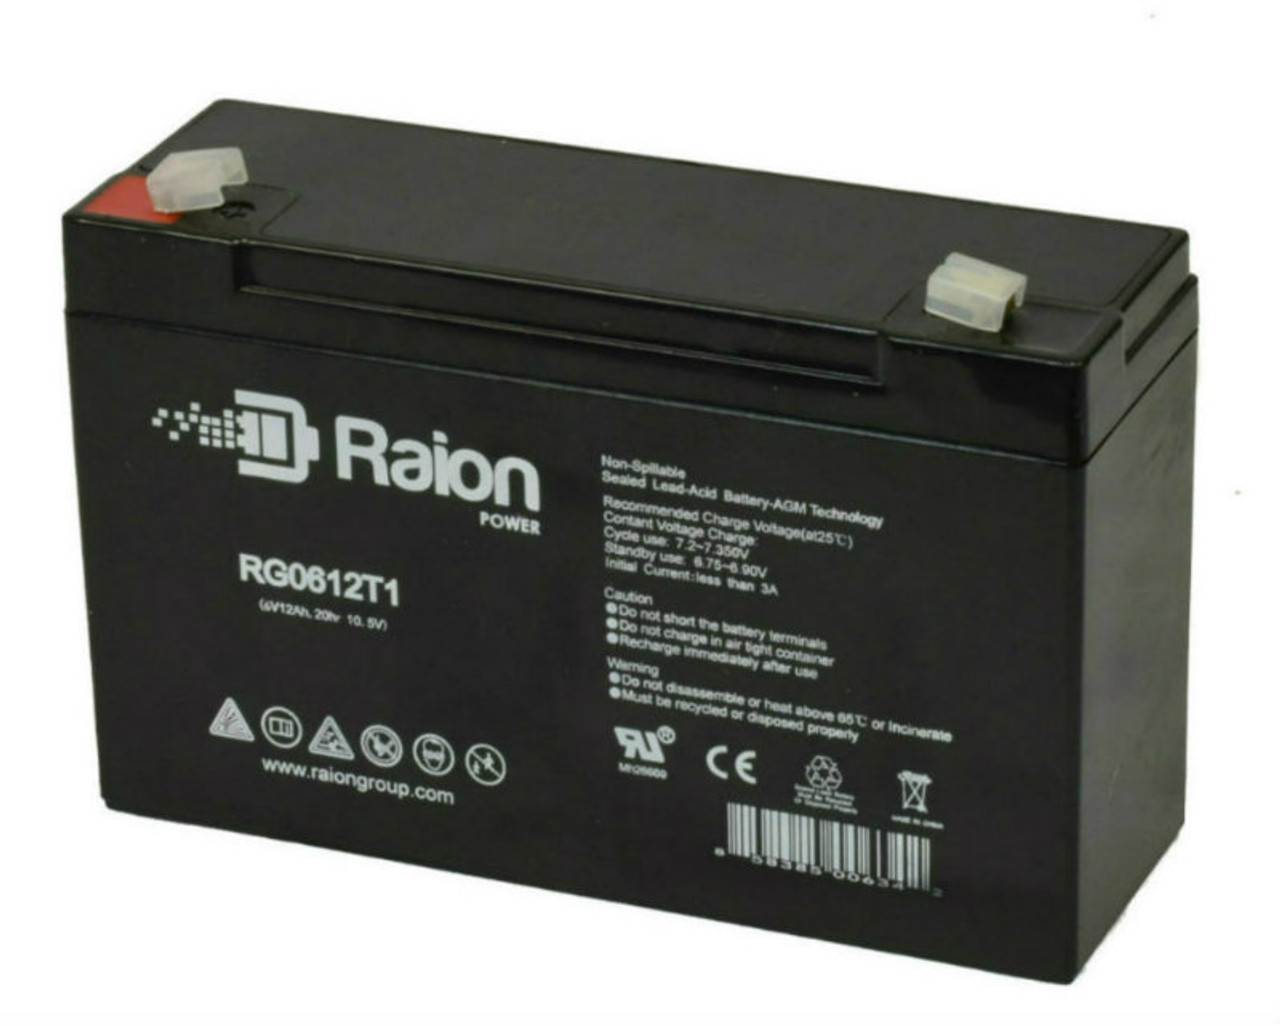 Raion Power RG06120T1 Replacement 6V 12Ah Emergency Light Battery for Emergi-Lite 12-DSM-36